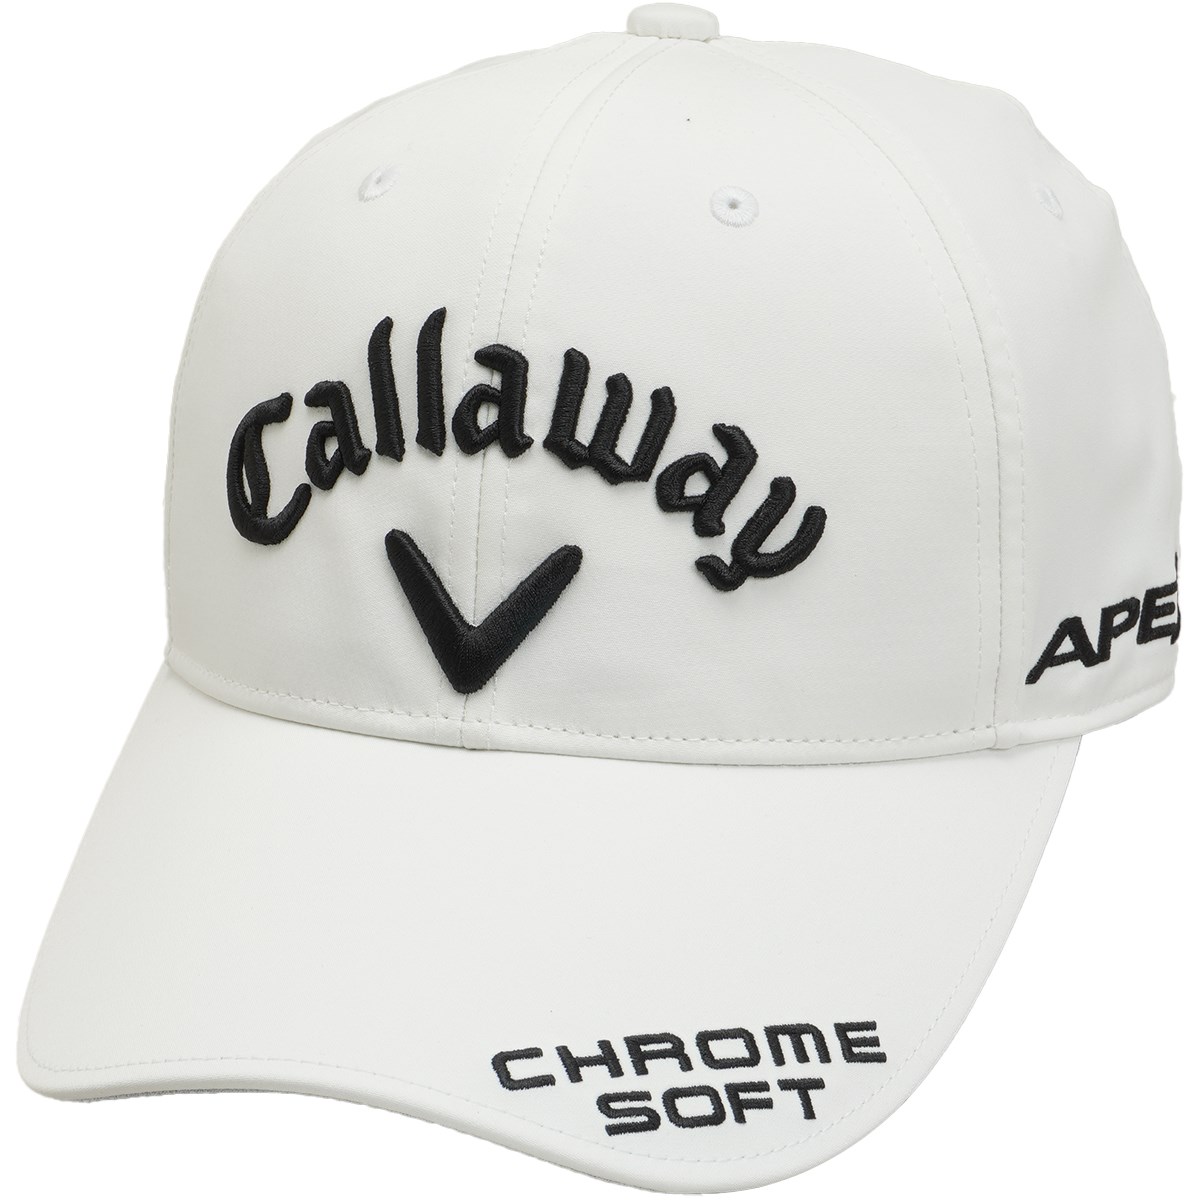 Callaway GOLF キャロウェイゴルフ キャップ 帽子 黒 ブラック アクセサリー